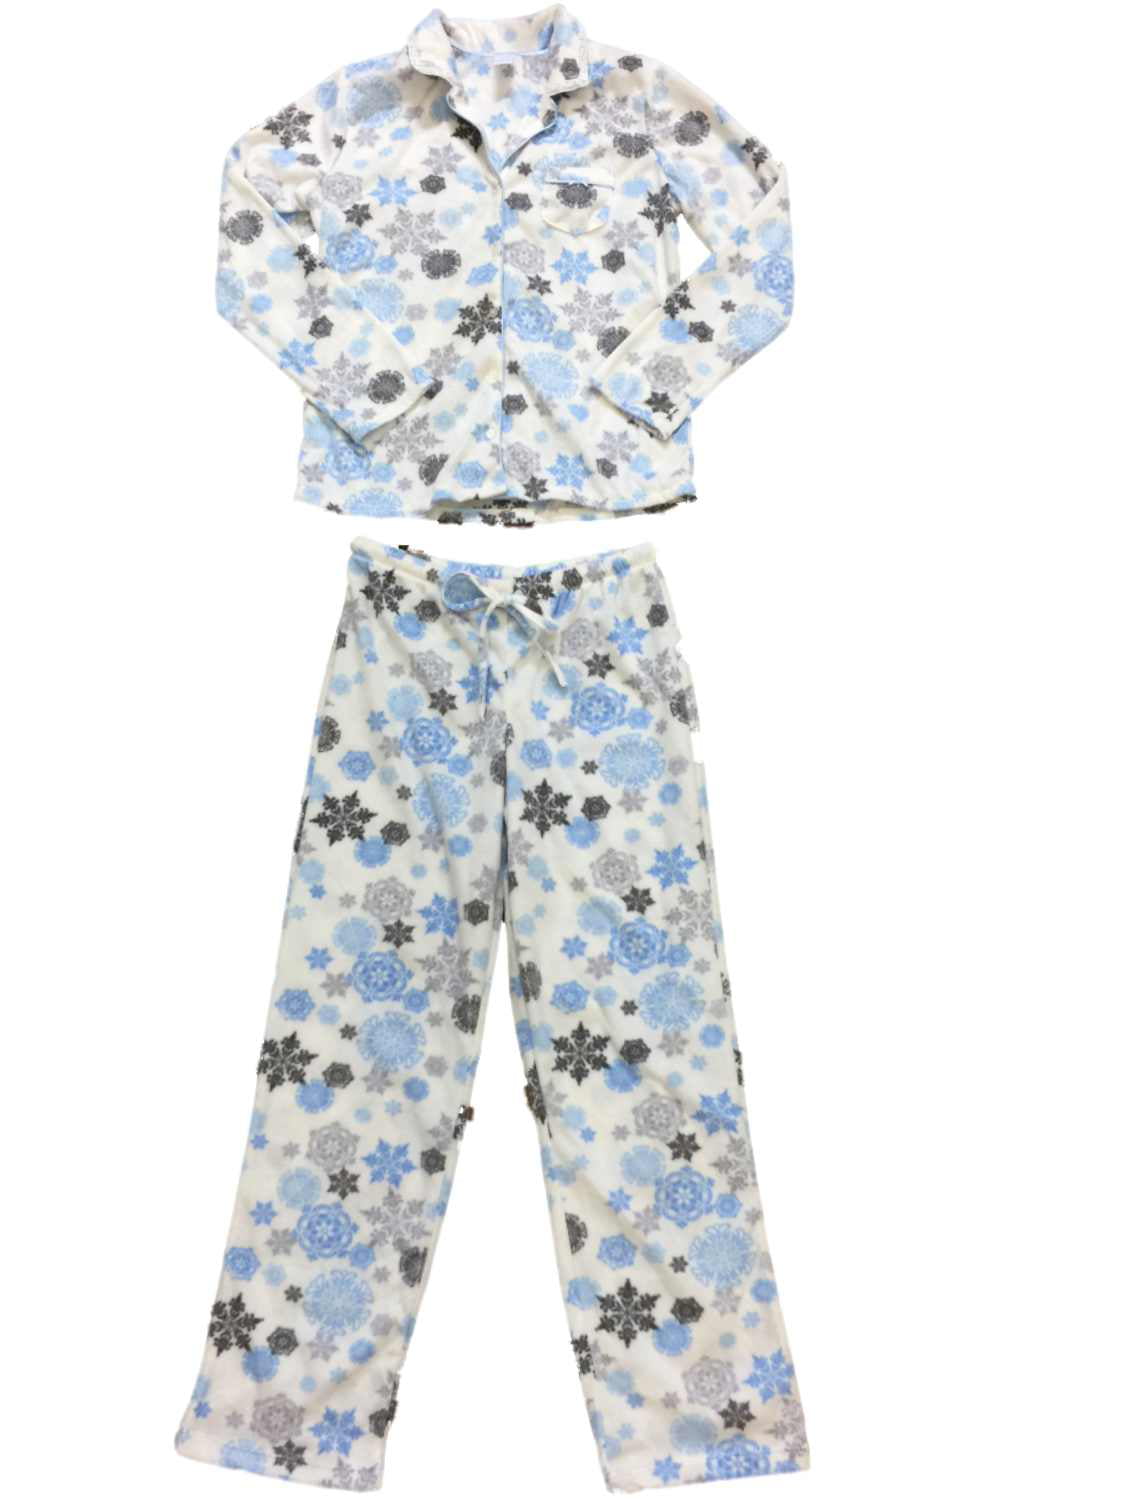 Adonna - Womens White Blue & Gray Snowflake Fleece Pajamas Fuzzy Sleep ...